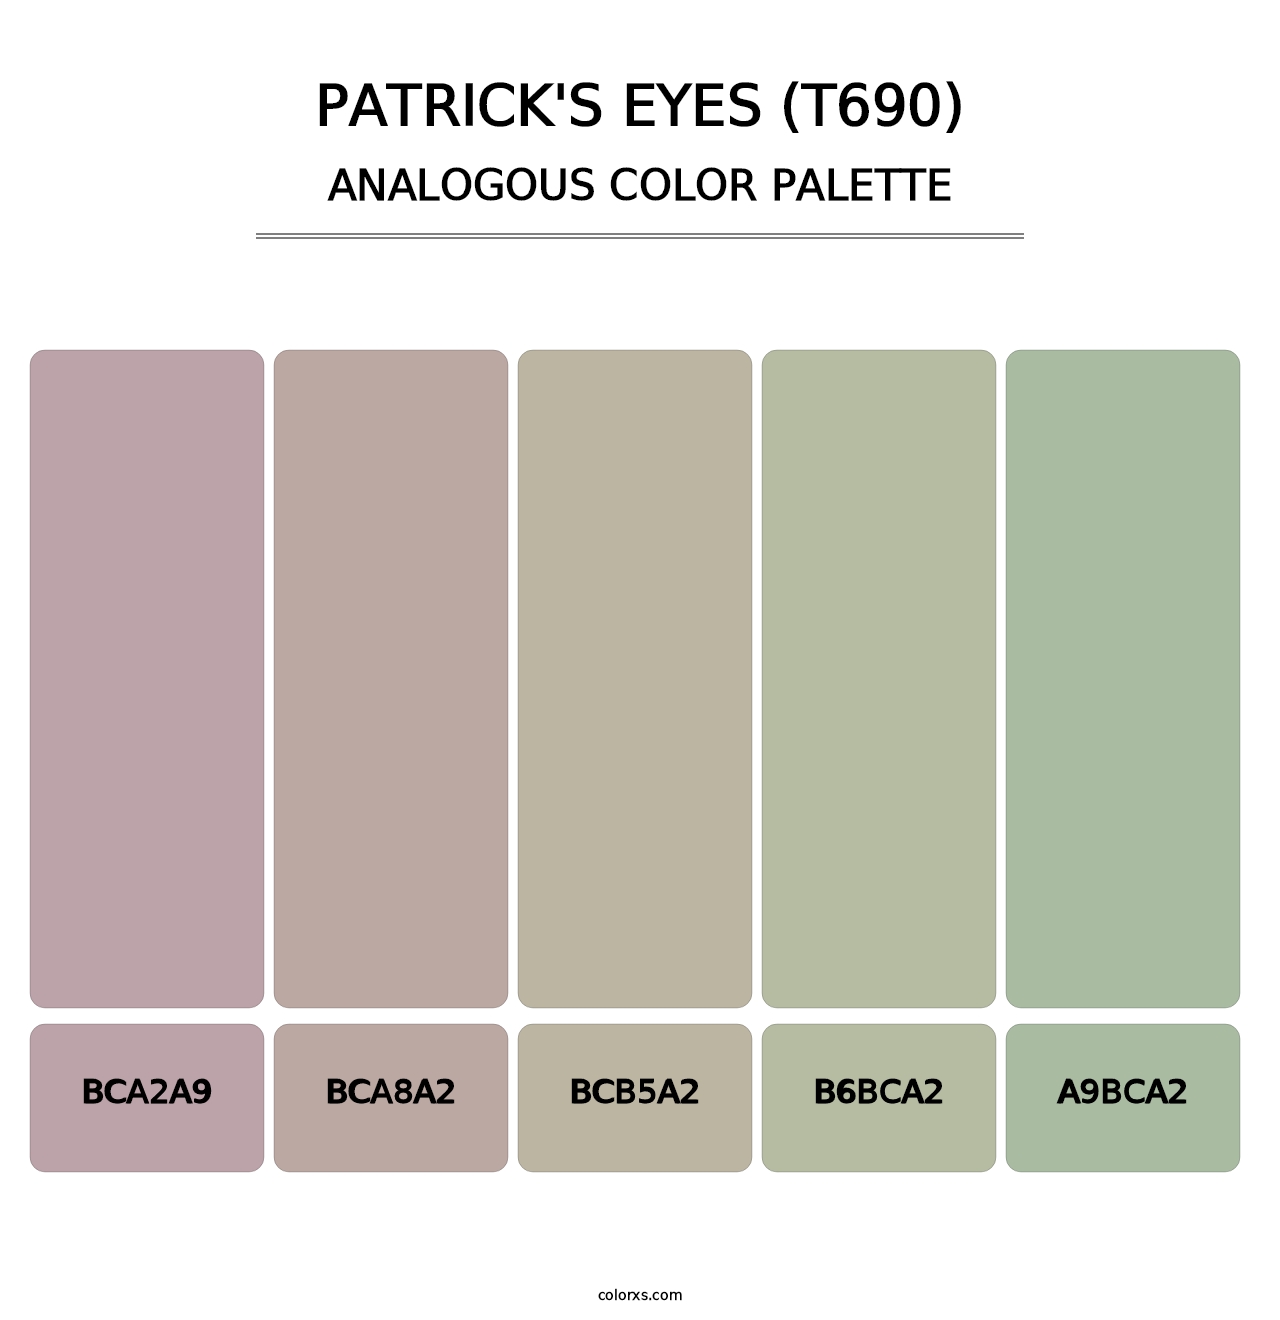 Patrick's Eyes (T690) - Analogous Color Palette